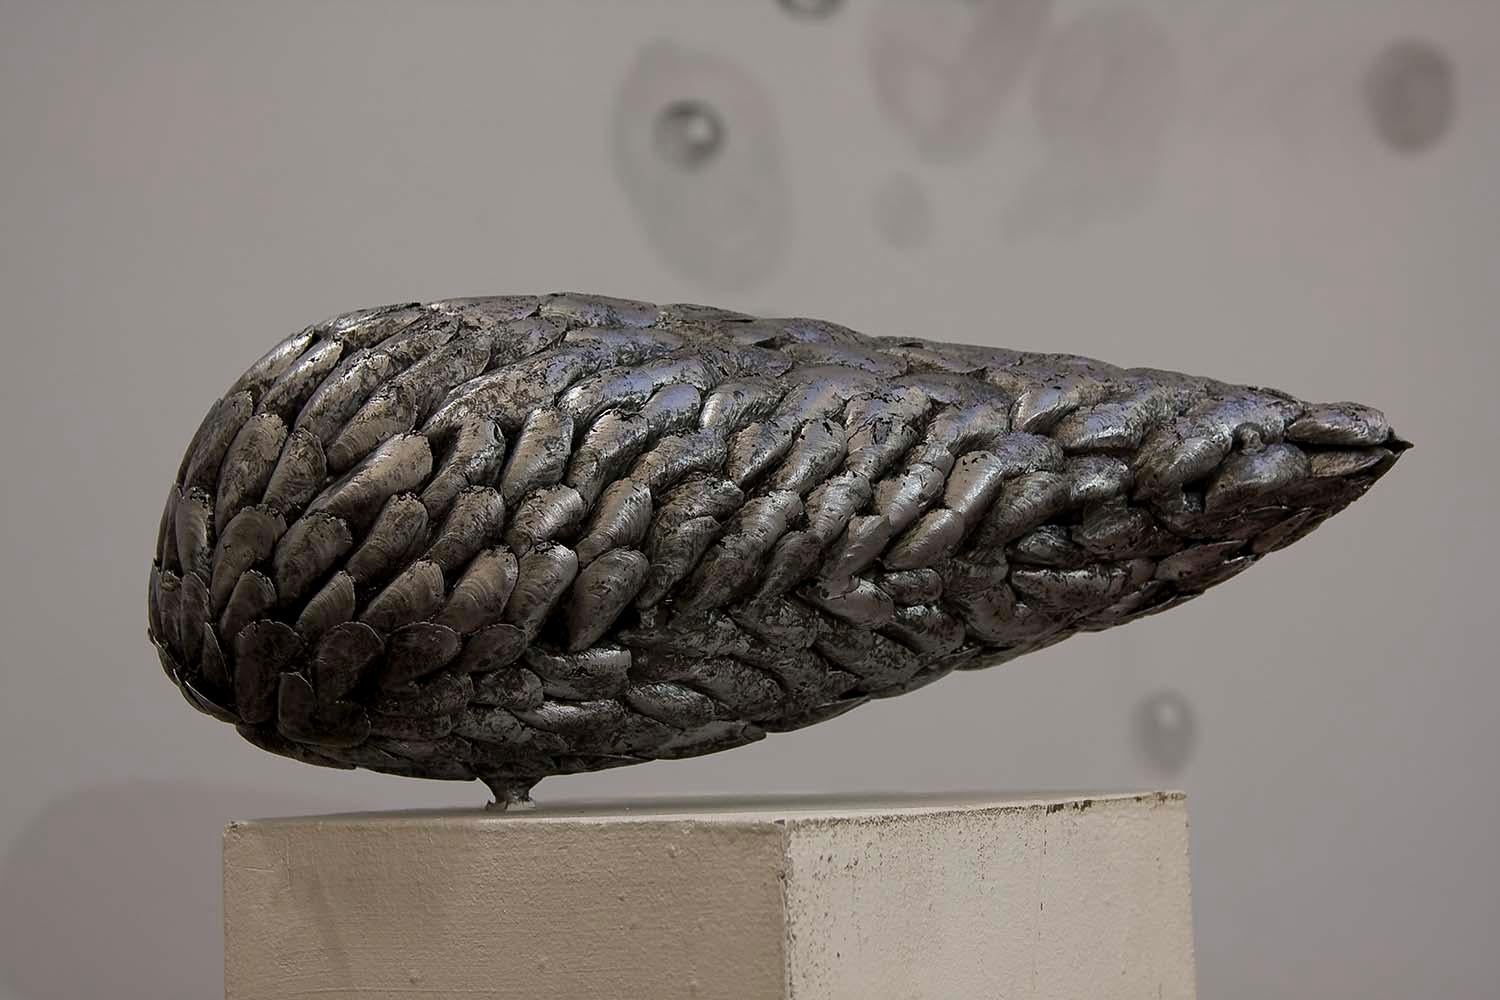 Mussel I est une sculpture unique en aluminium de l'artiste contemporain Ondřej Oliva, dont les dimensions sont de 20 cm × 49 cm × 26 cm (7,9 × 19,3 × 10,2 in). La sculpture est signée et accompagnée d'un certificat d'authenticité.

Cette figure a